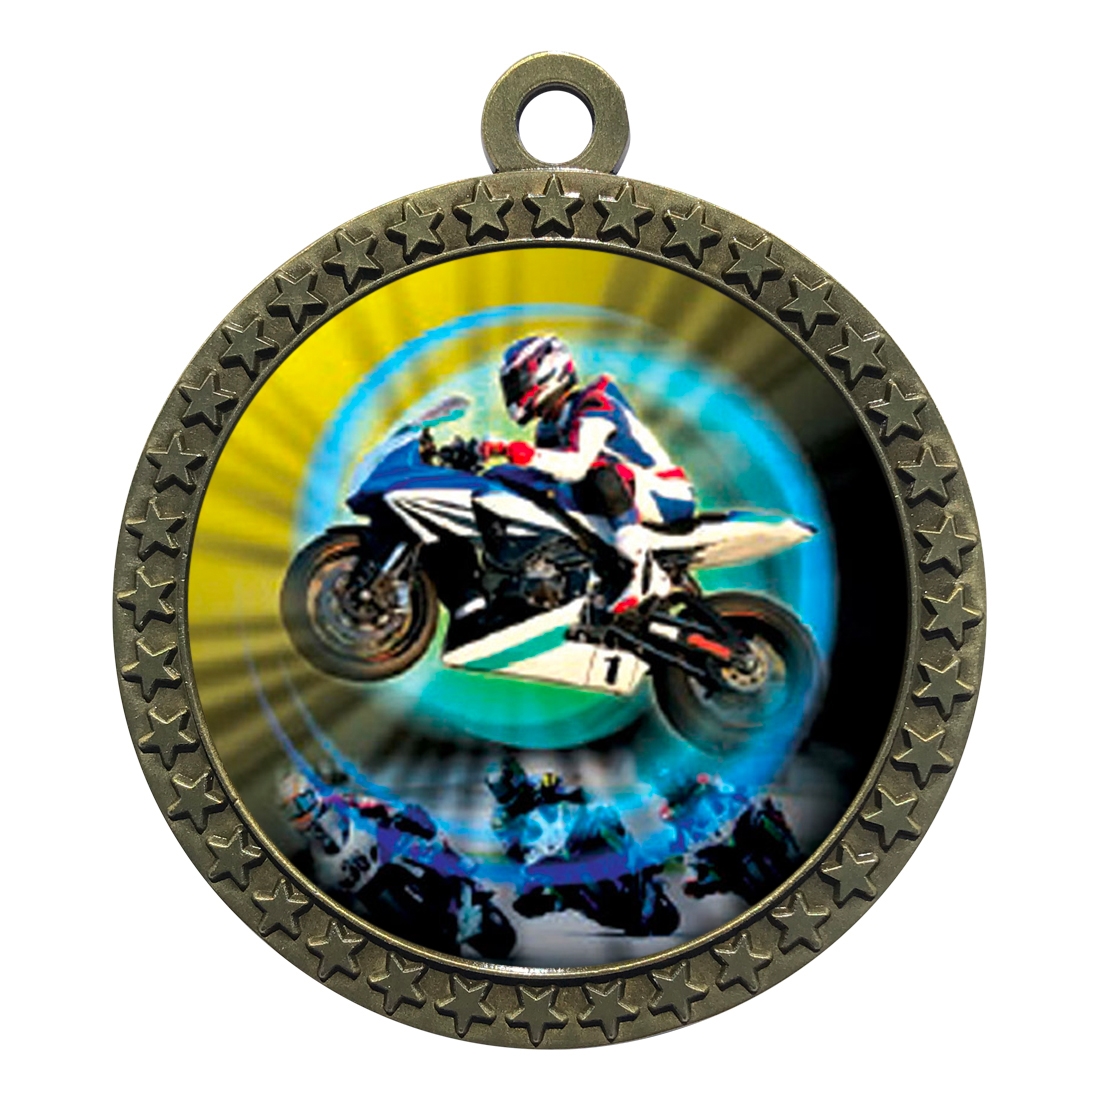 2-1/2" Motorcycle Racing Medal